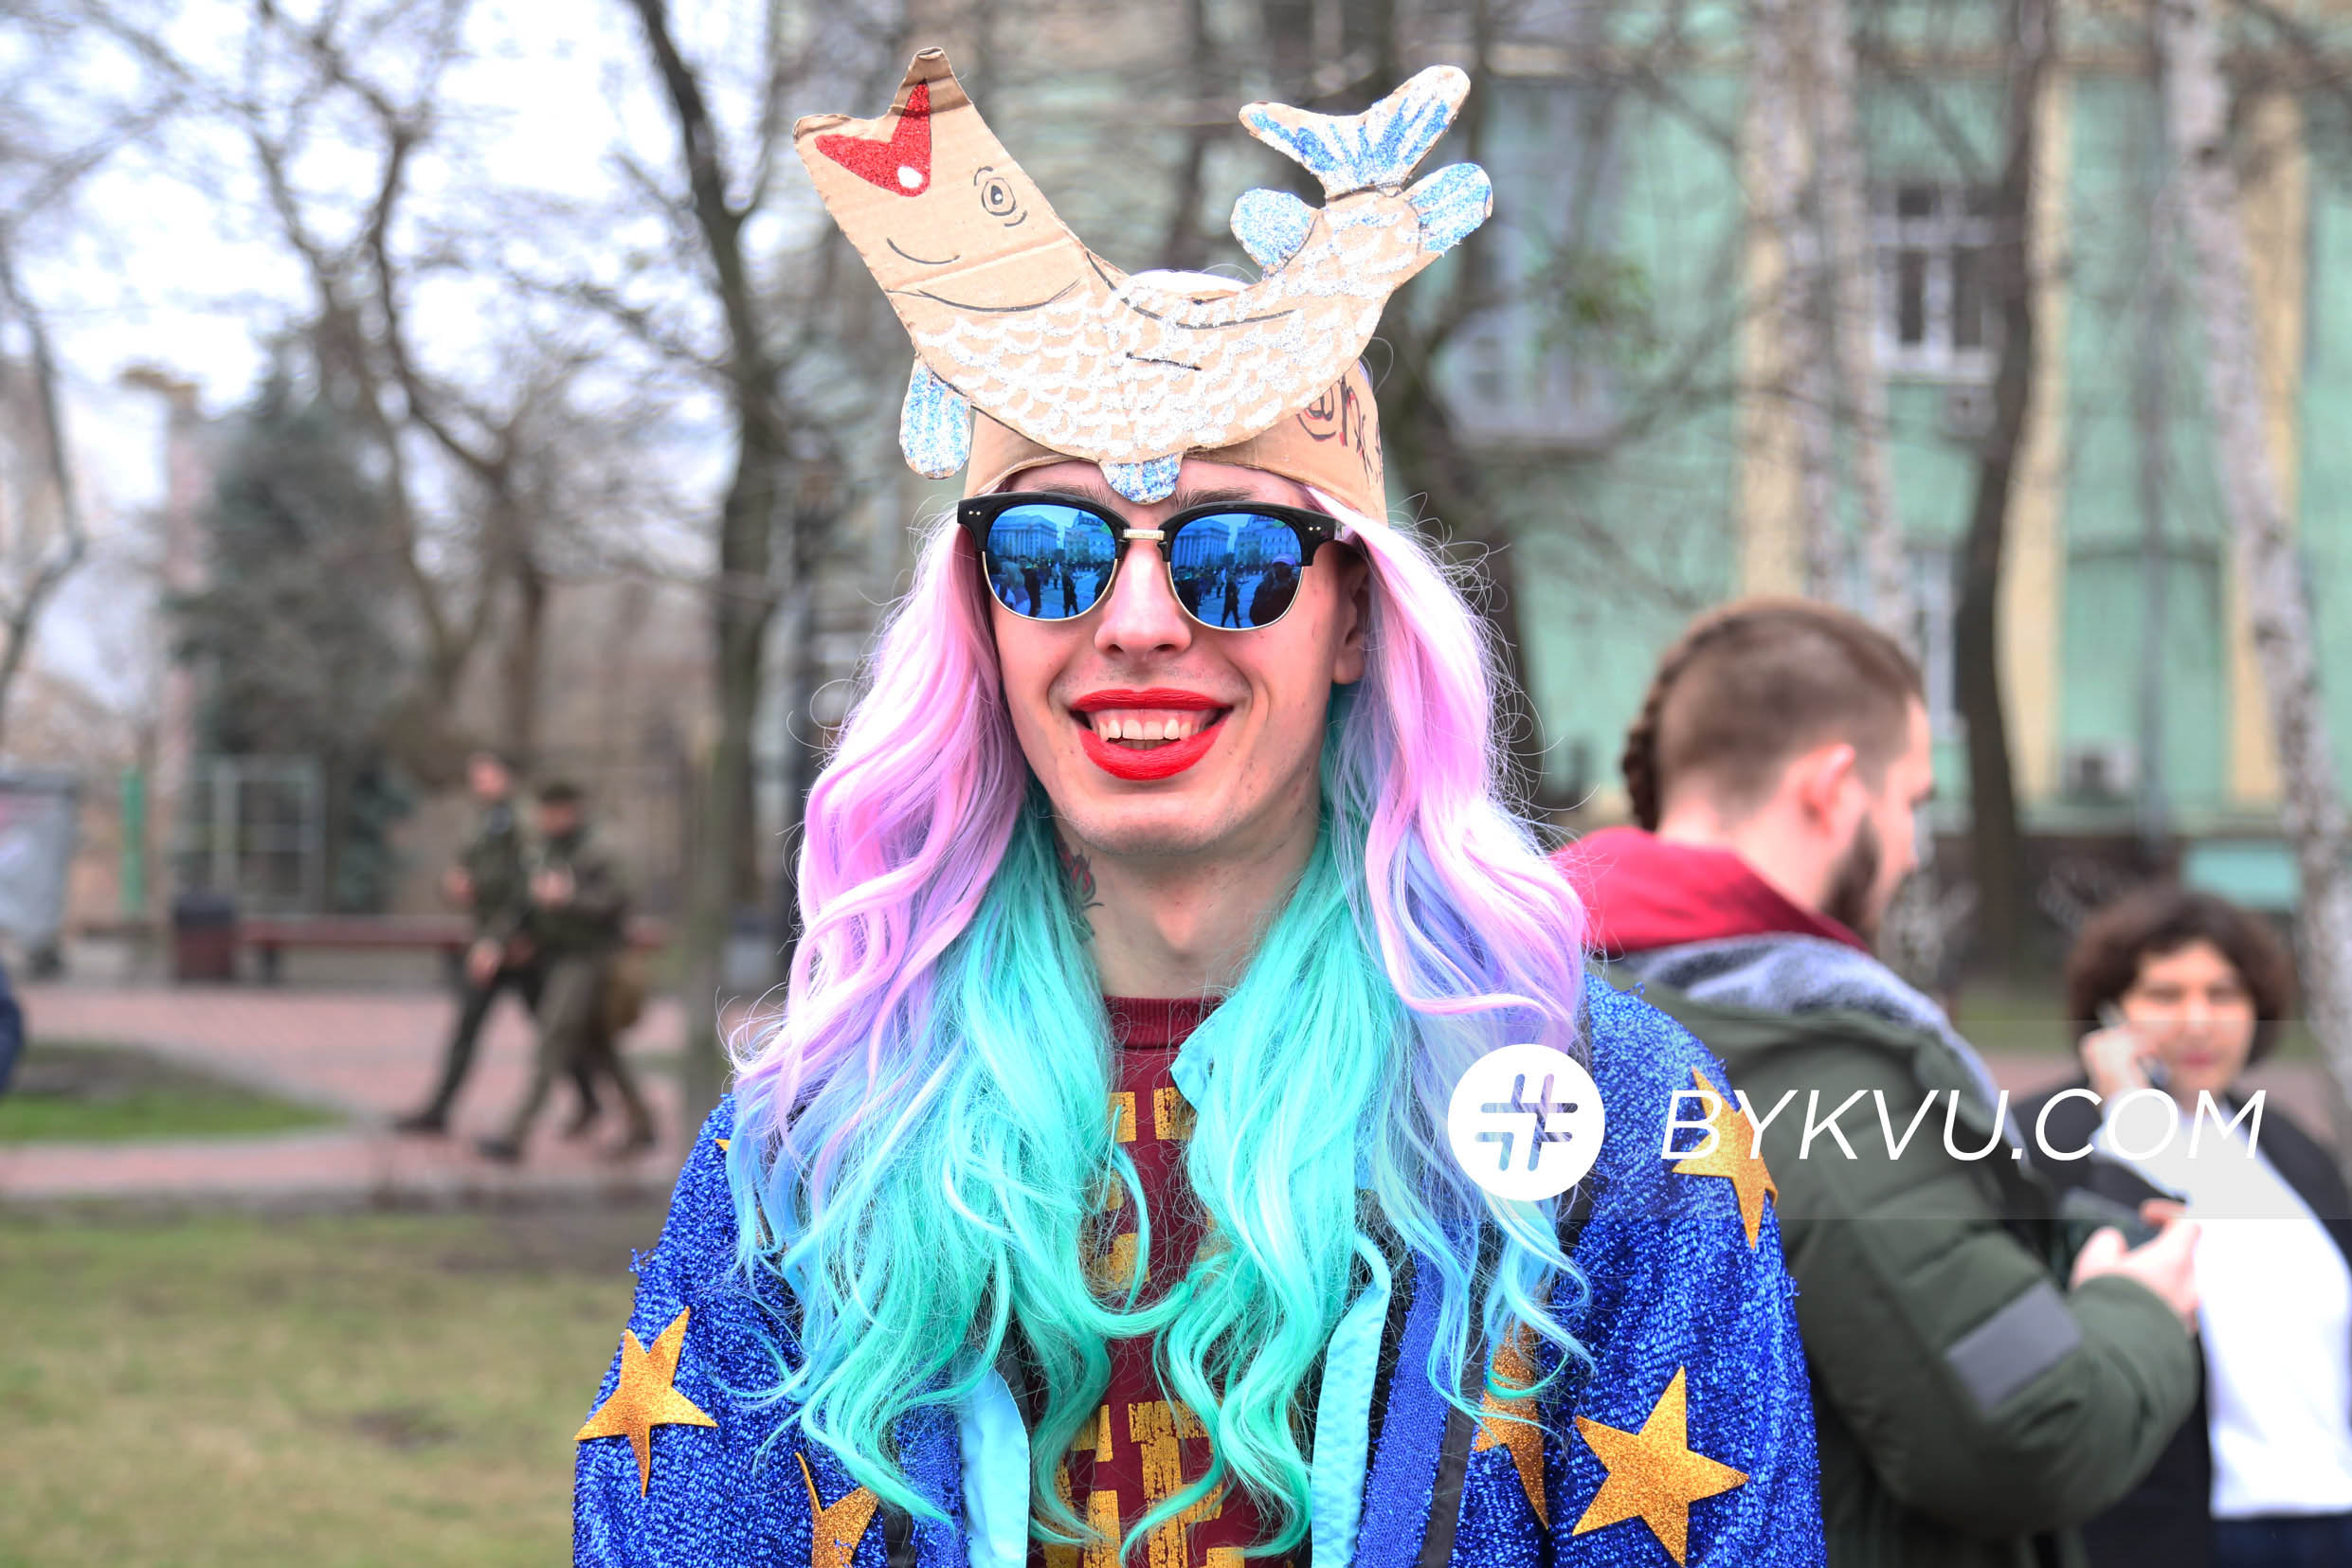 марш_феминистки_софийская площадь